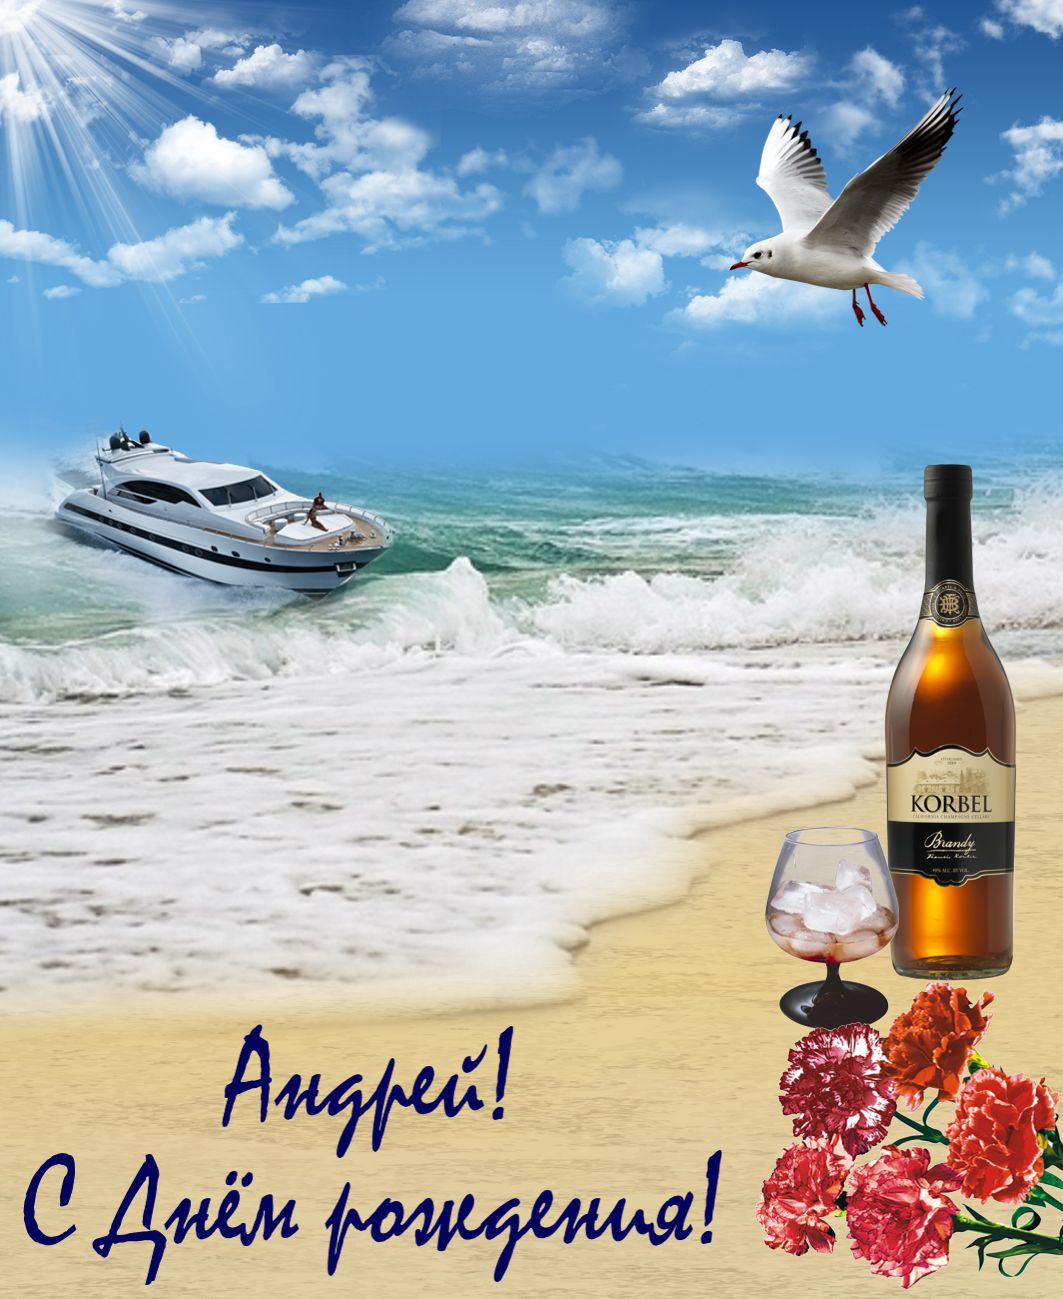 Открытка на День рождения Андрею - райский пляж под голубым небом с чайкой